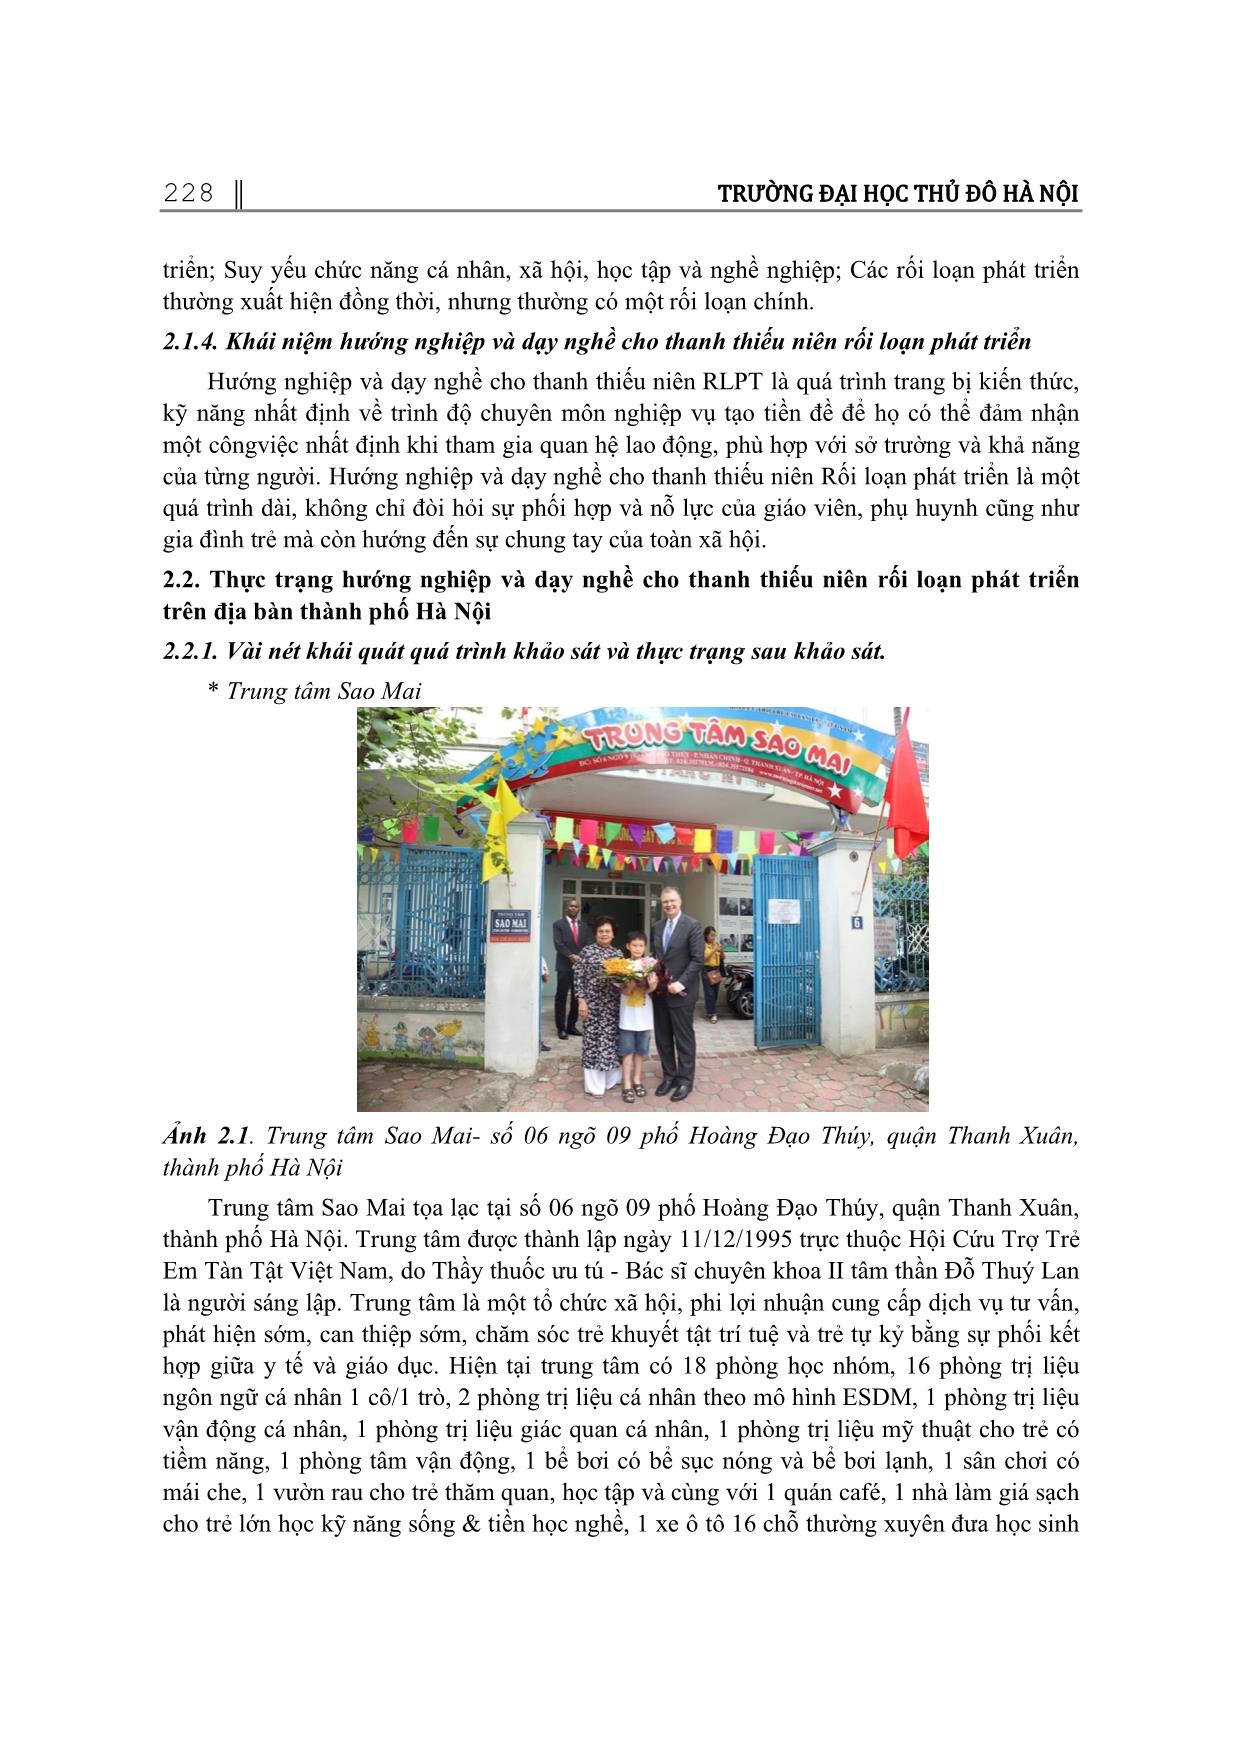 Một số giải pháp nâng cao chất lượng hướng nghiệp và dạy nghề cho thanh thiếu niên rối lọn phát triển trên địa bàn thành phố Hà Nội trang 3